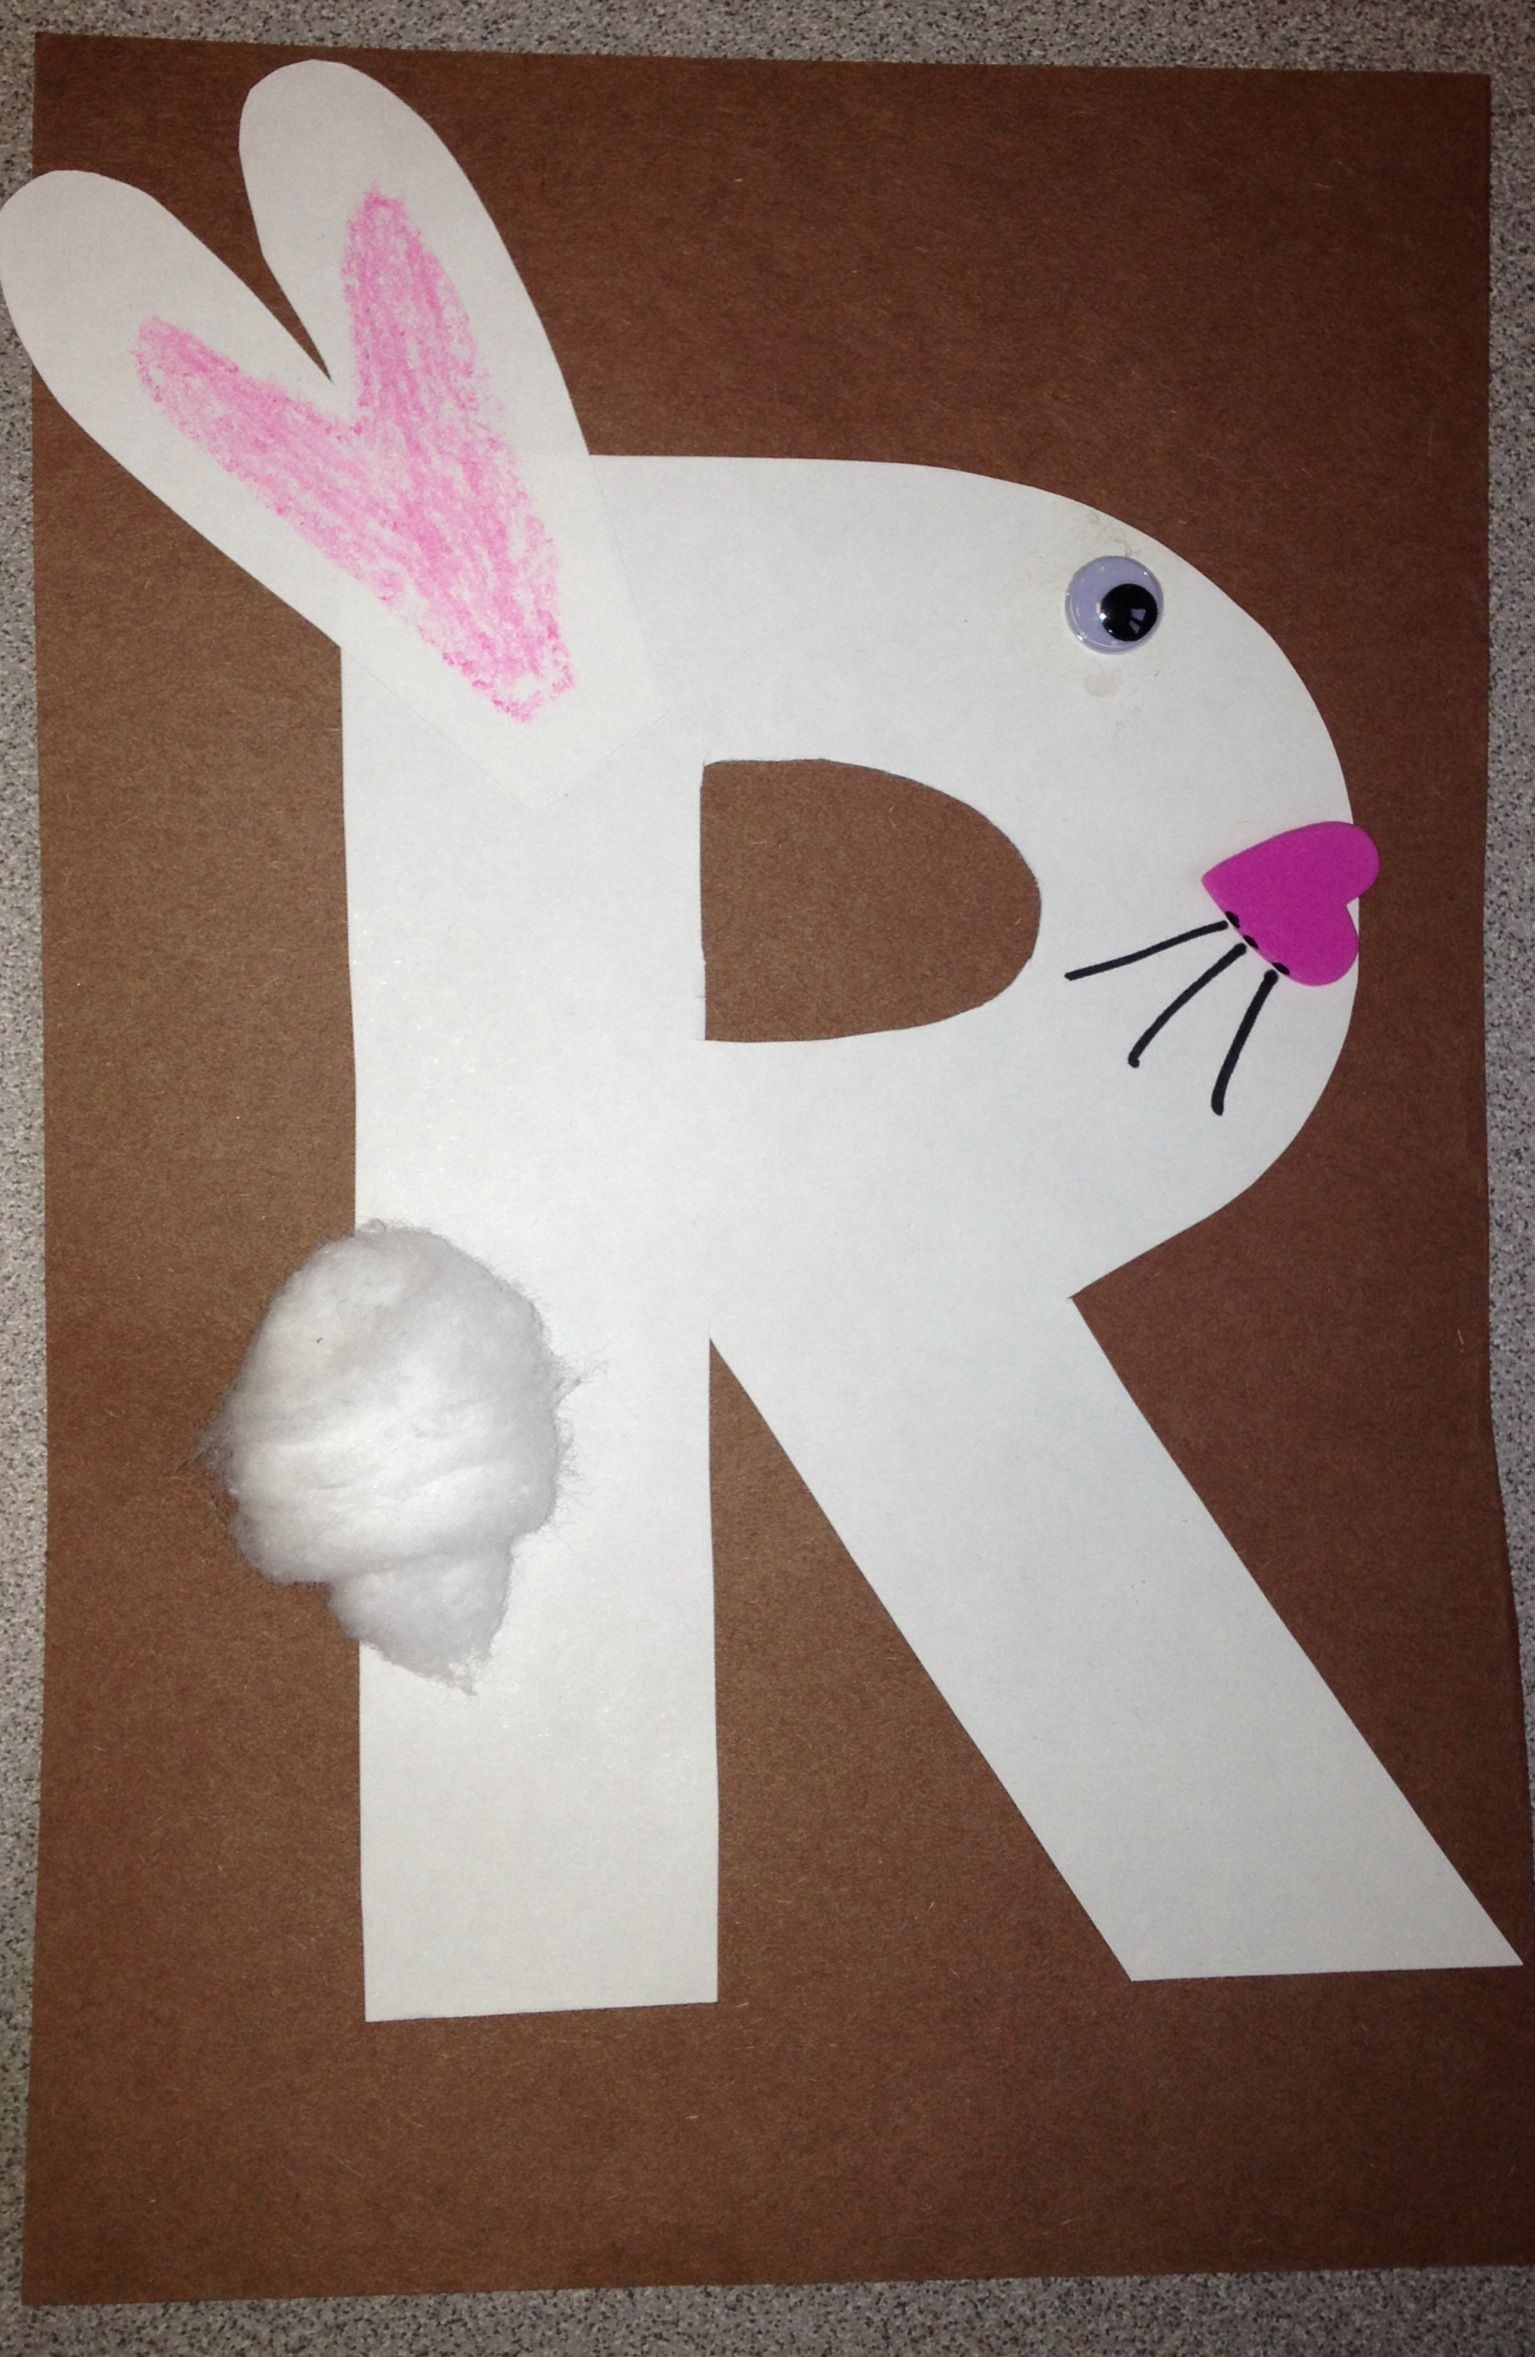 Papercraft Bunny Letter R Crafts for Preschoolers Preschool and Kindergarten